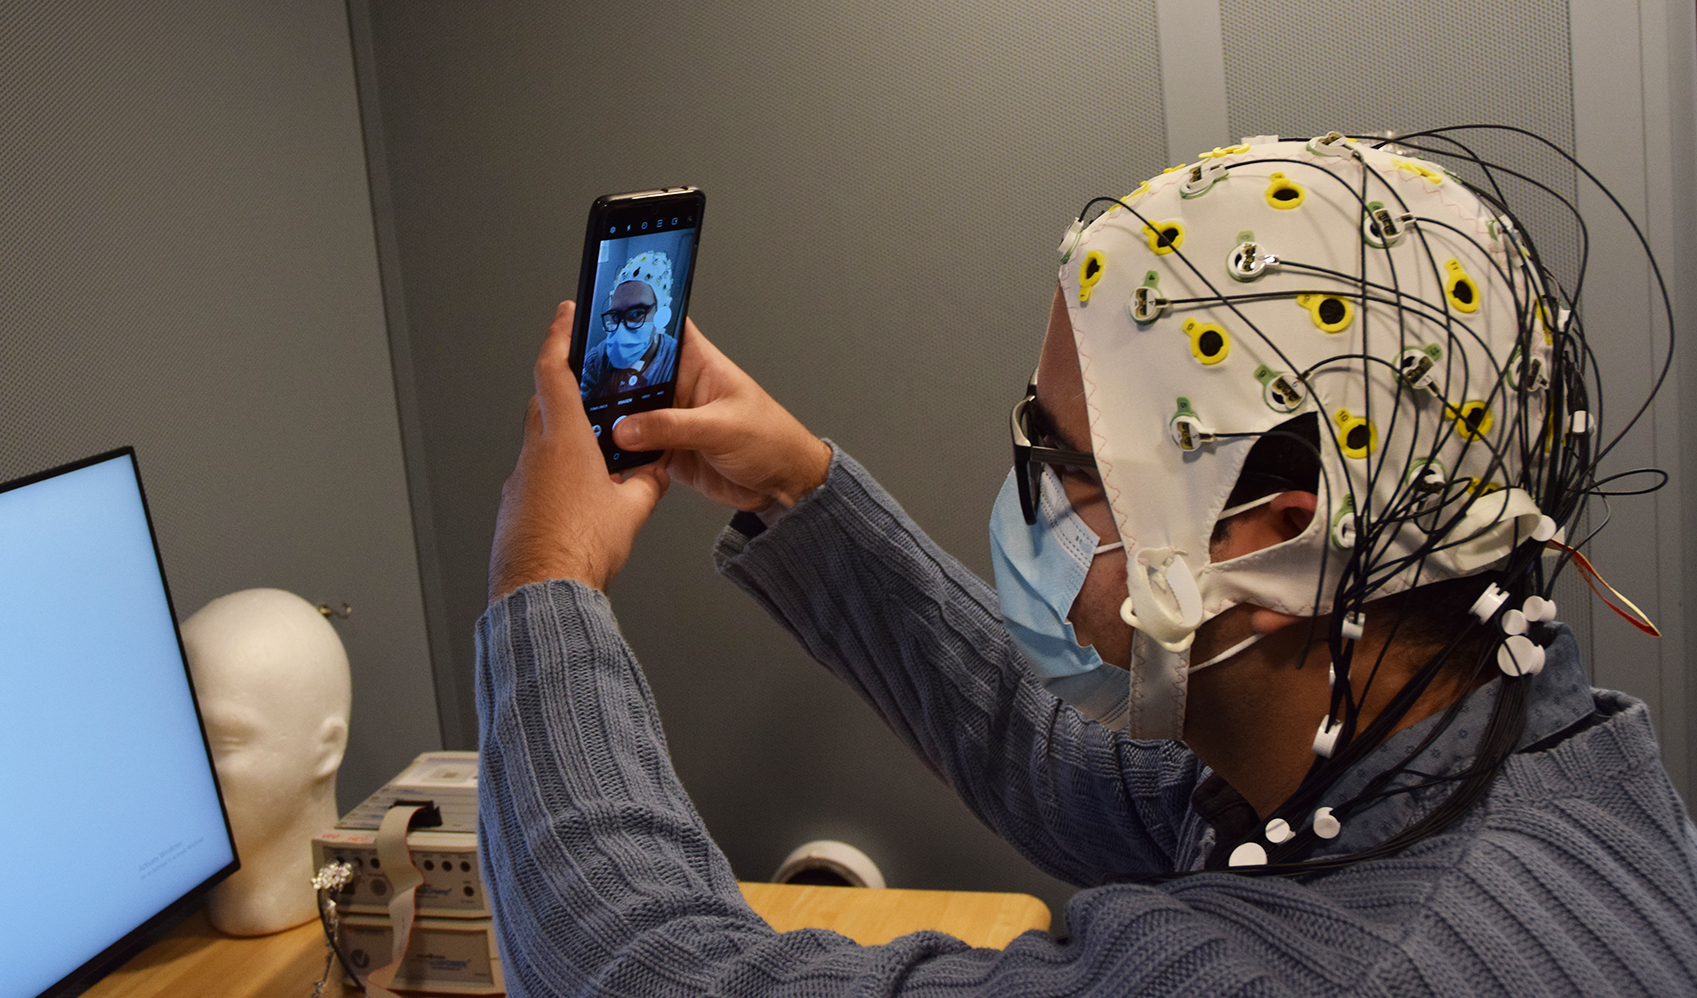 Reinaldo Cabrera Pérez takes a selfie while wearing an electroencephalography (EEG) cap.